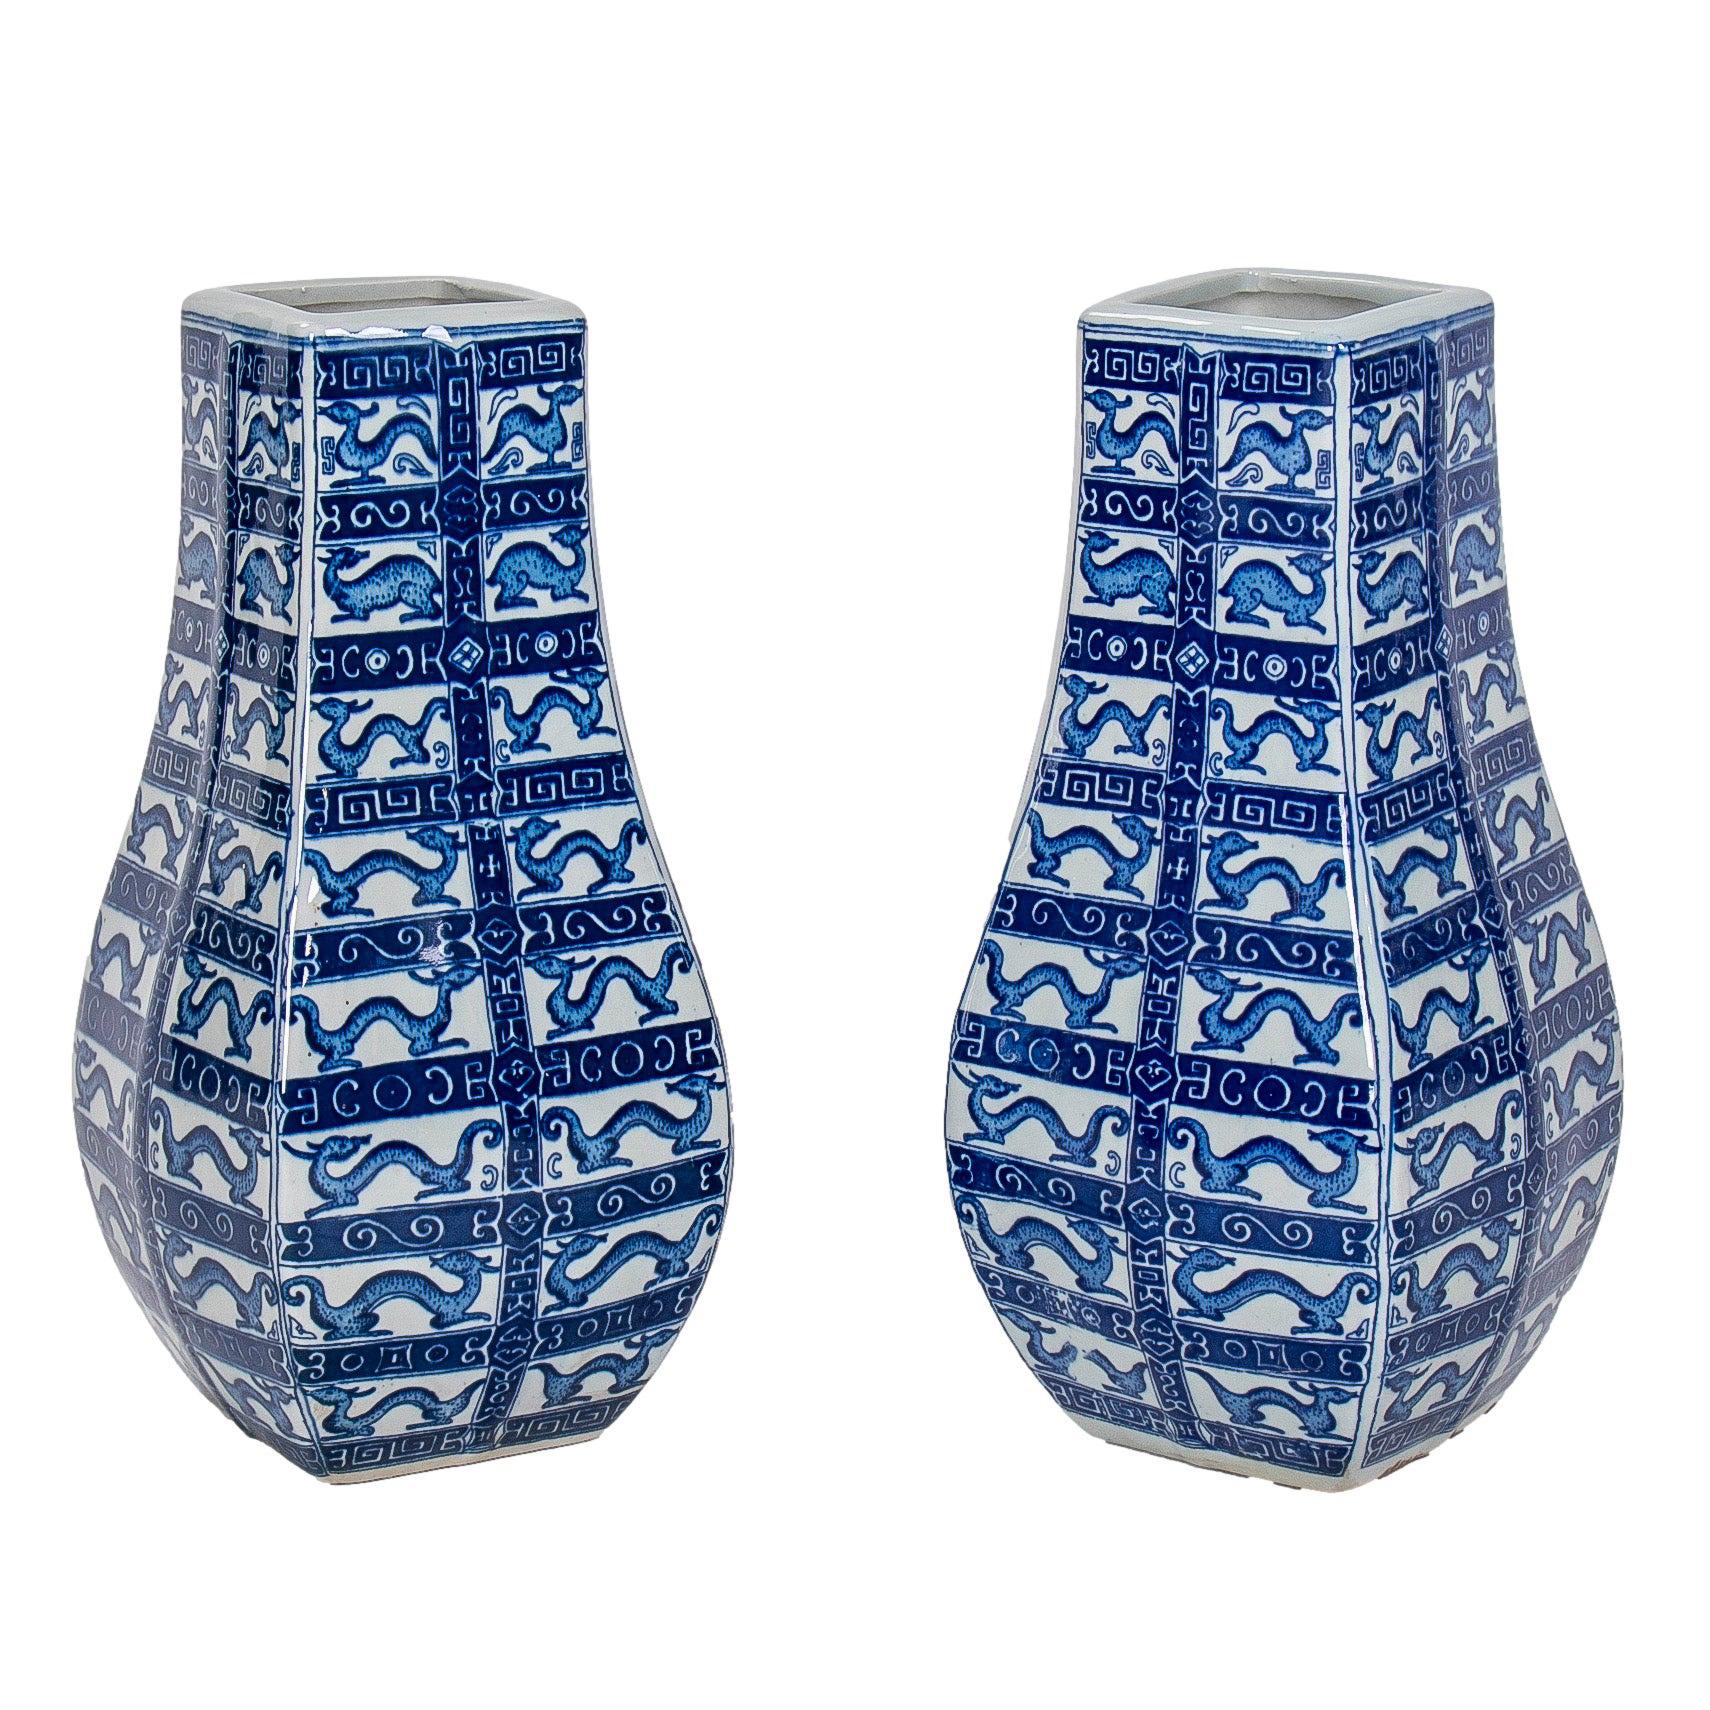 Pair of Asian White and Cobalt Blue Glazed Porcelain Vases 